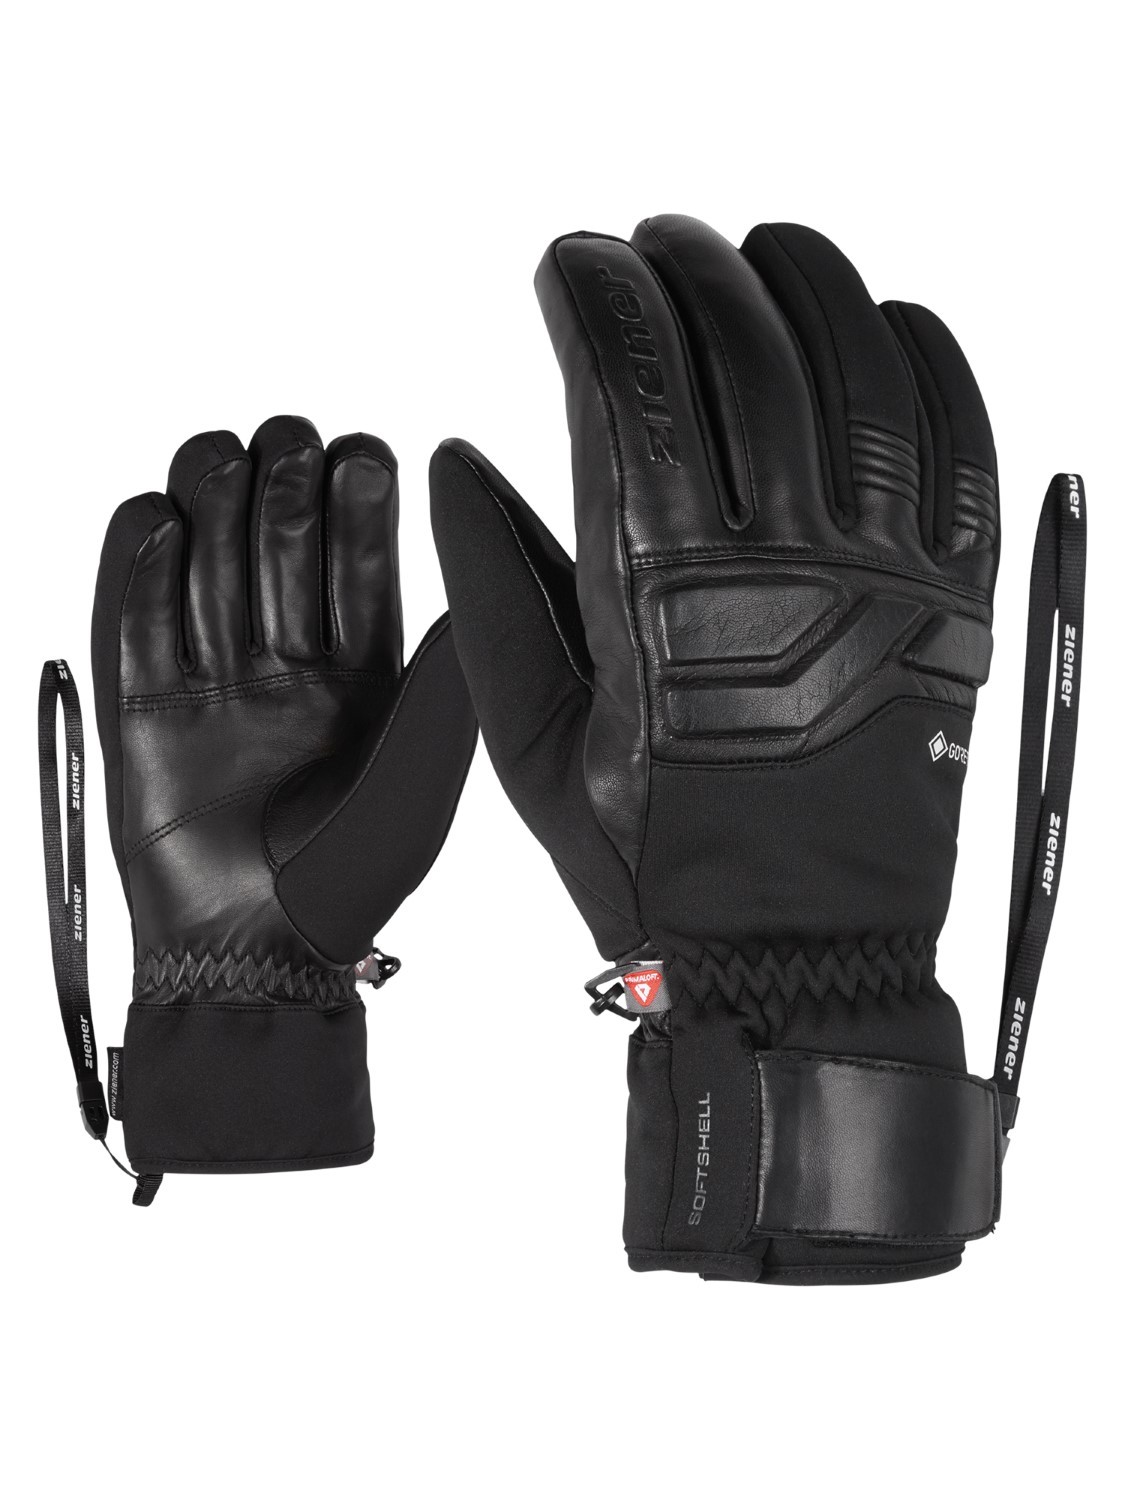 Ziener Kinder Skihandschuhe Fingerhandschuhe LOMO AS® glove schwarz 801963 12 